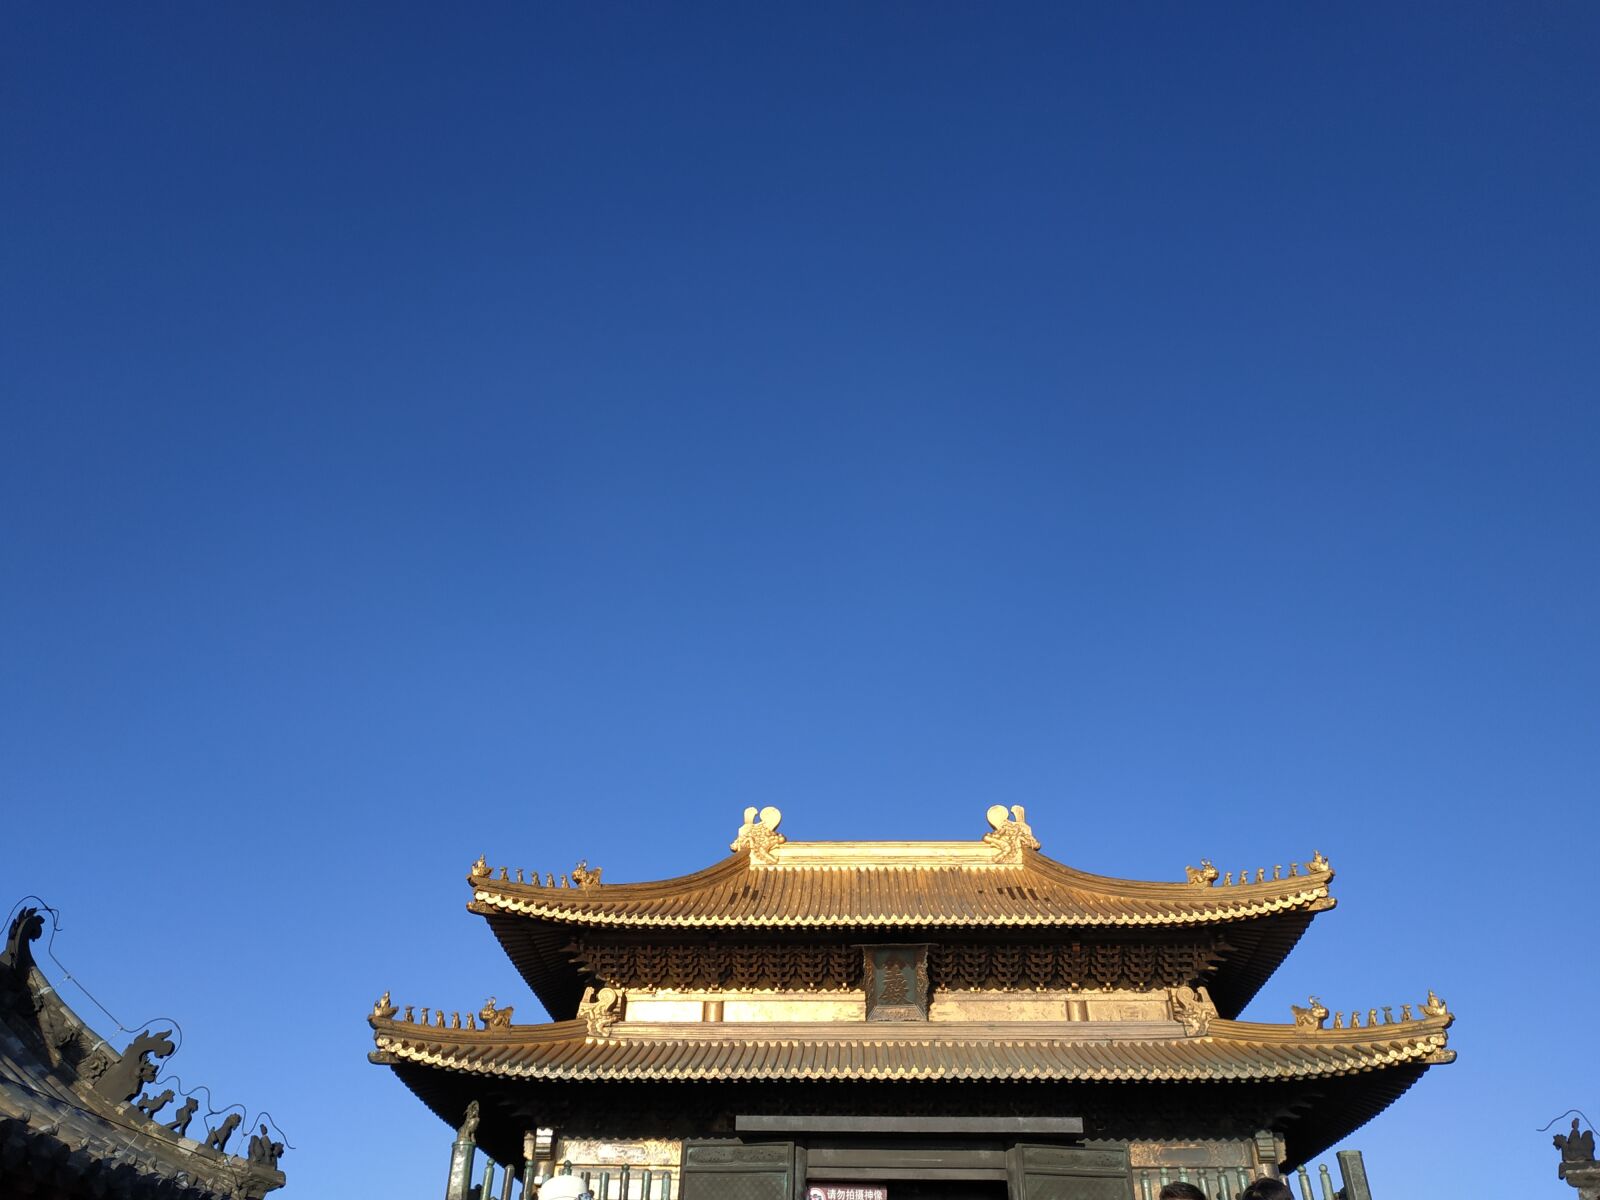 Xiaomi Redmi Note 5 sample photo. Wudang mountain, the golden photography